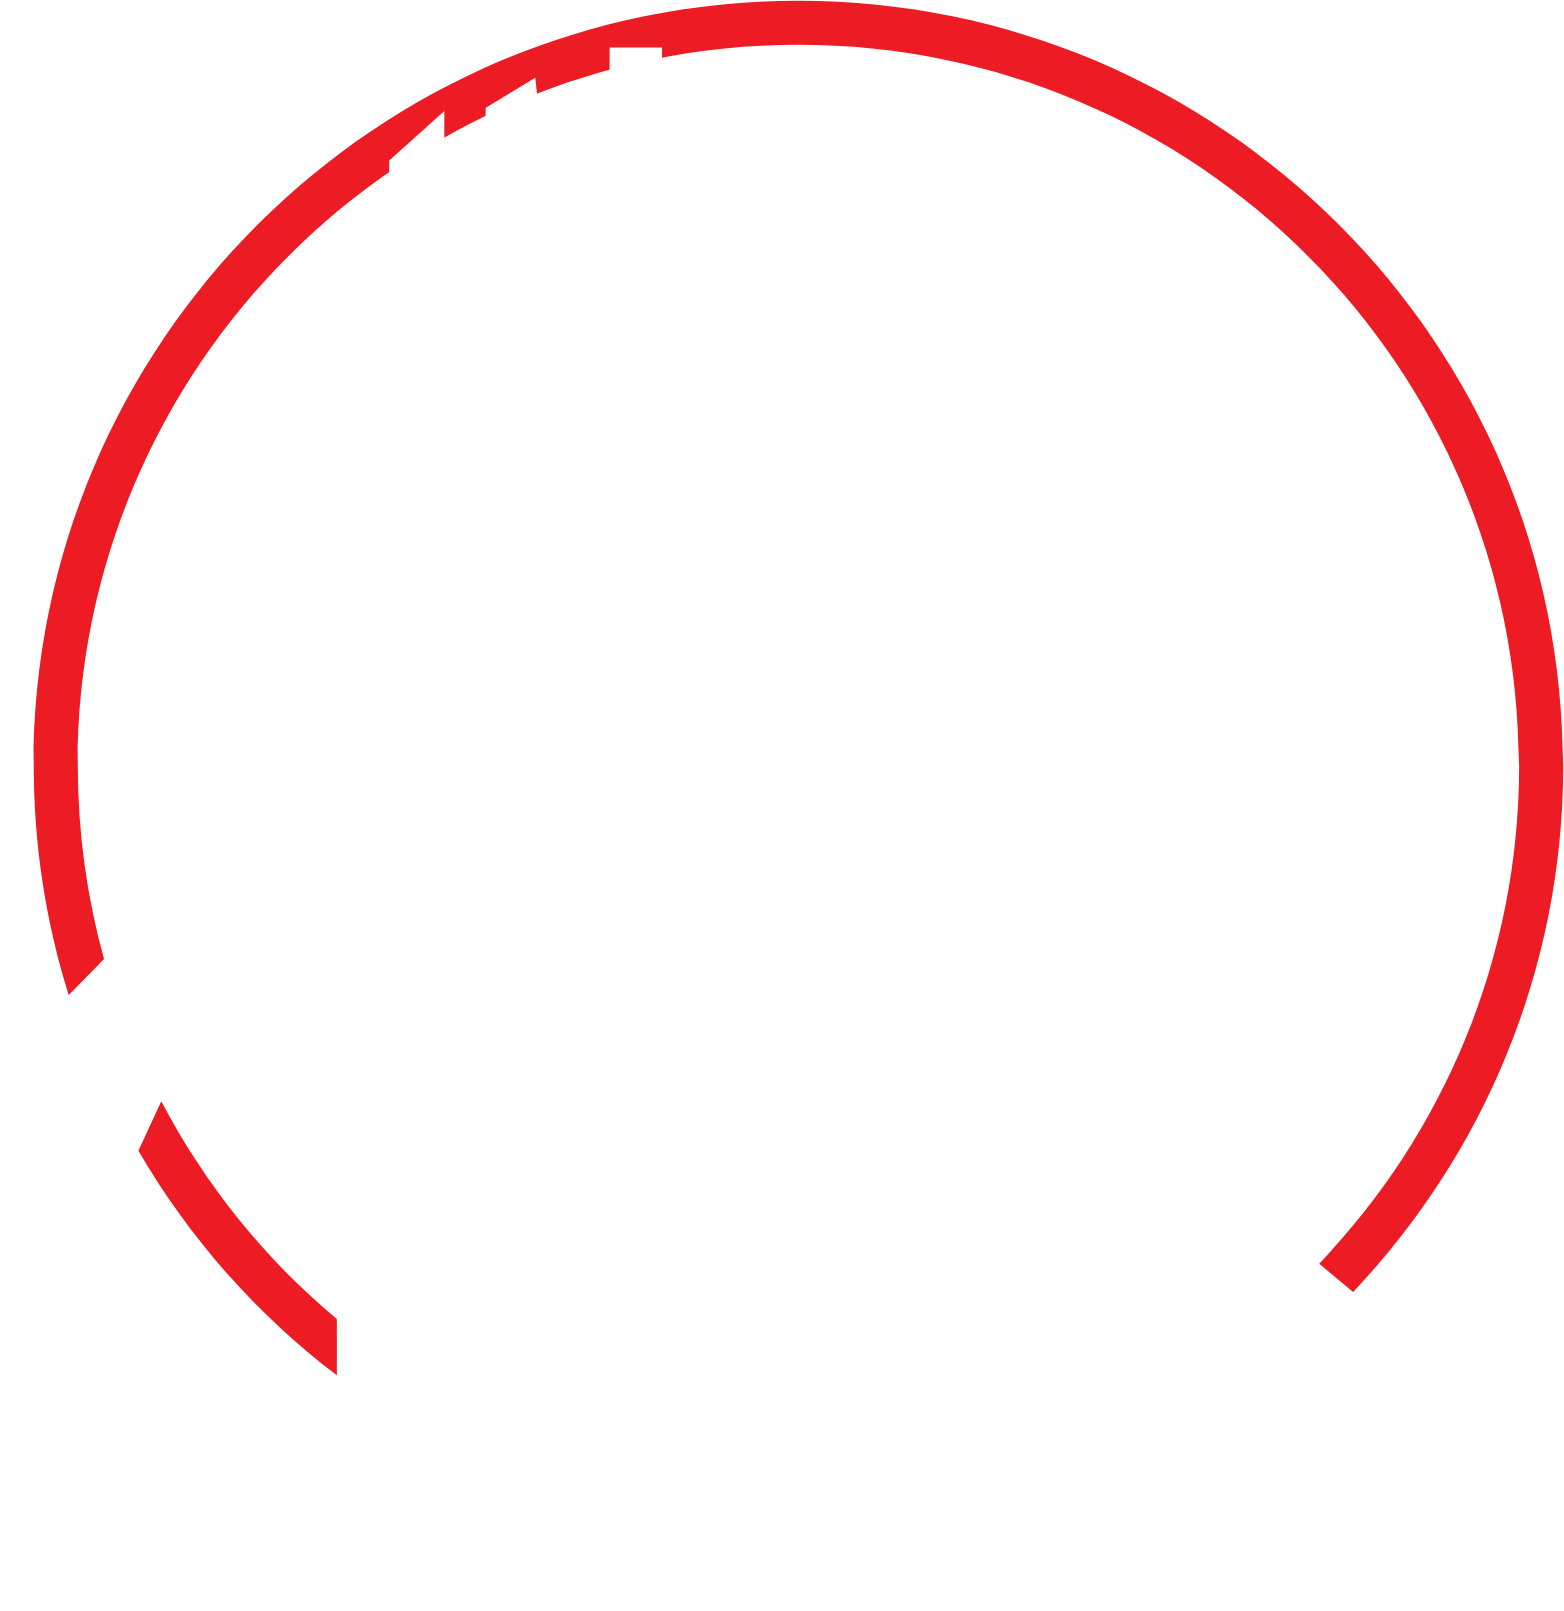 Sinopec logo pour fonds sombres (PNG transparent)